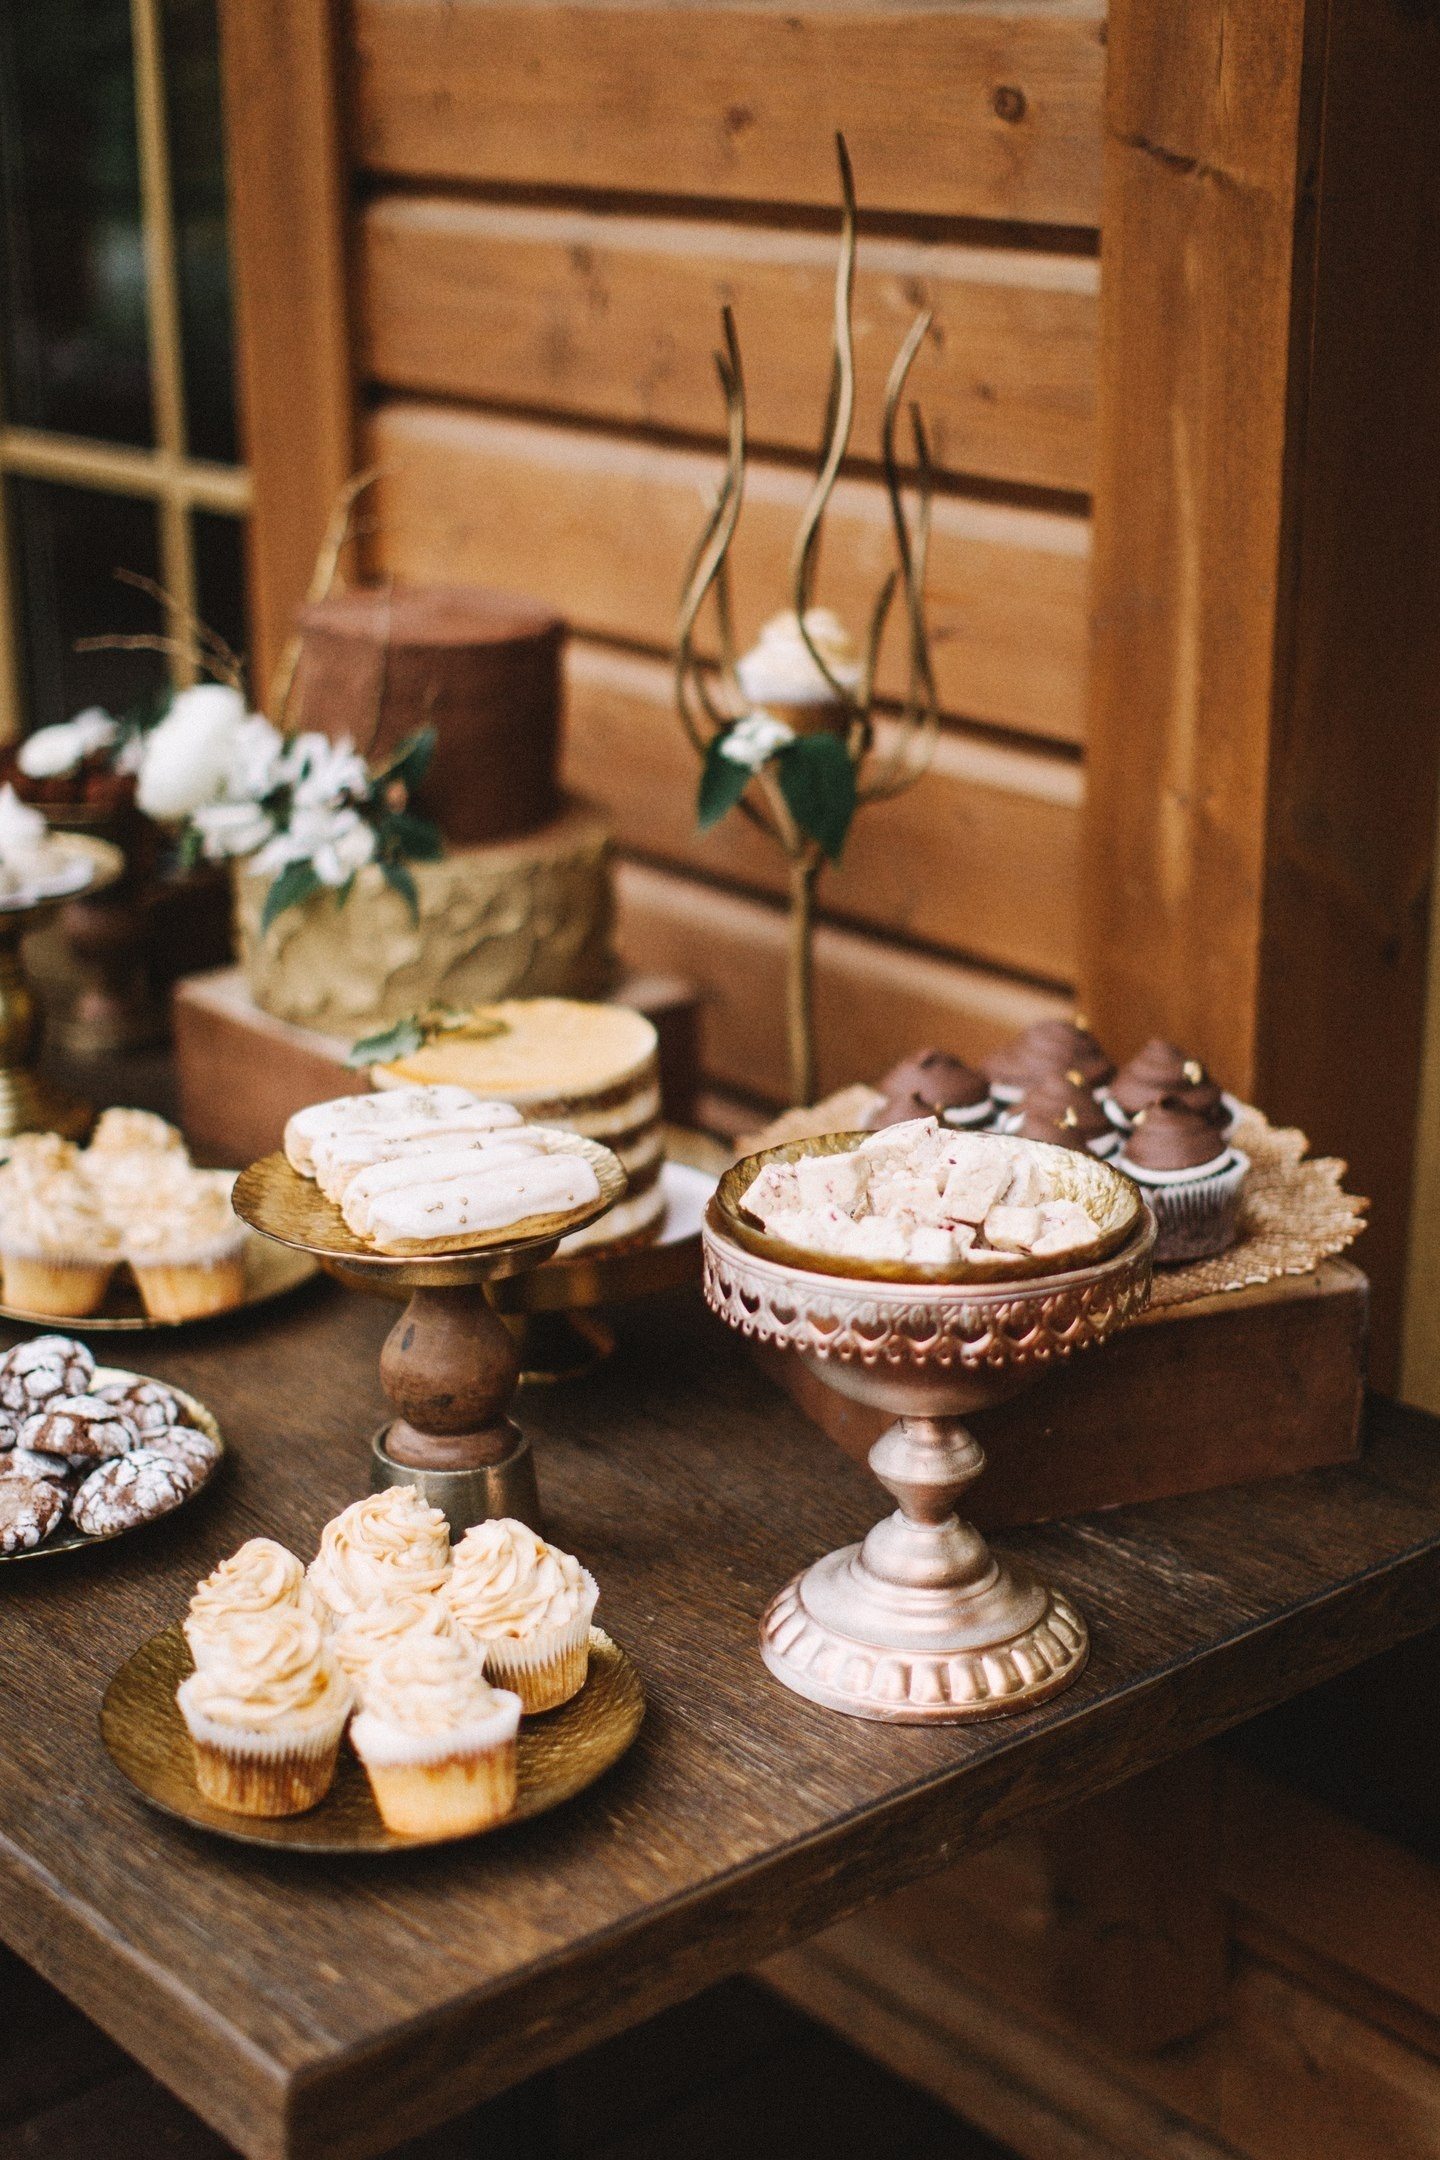 Slomljeni čokoladni štapići, tartufi, mocha prozračni deserti, ukrašeni zrnima kave i ažurnim kolačima s glazurom u svadbenom stilu izgledaju sjajno u društvu starih kutija i ukrašenih štandova